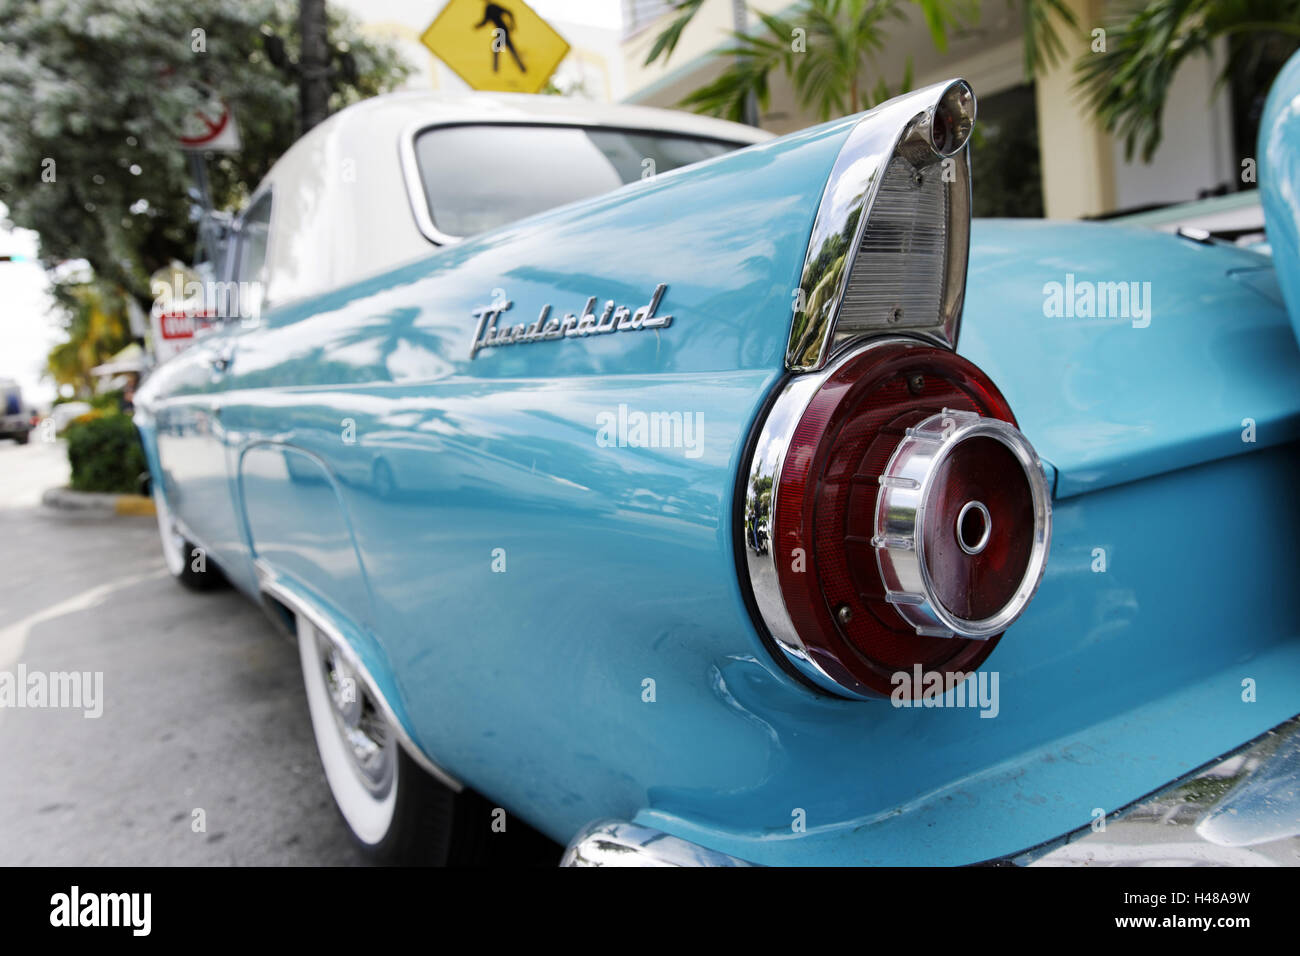 Détail dérive, Ford Thunderbird, année de fabrication 1957, les années 50, American art deco, l'hôtel Avalon, Ocean Drive, Miami South Beach, quartier Art déco, Florida, USA, Banque D'Images